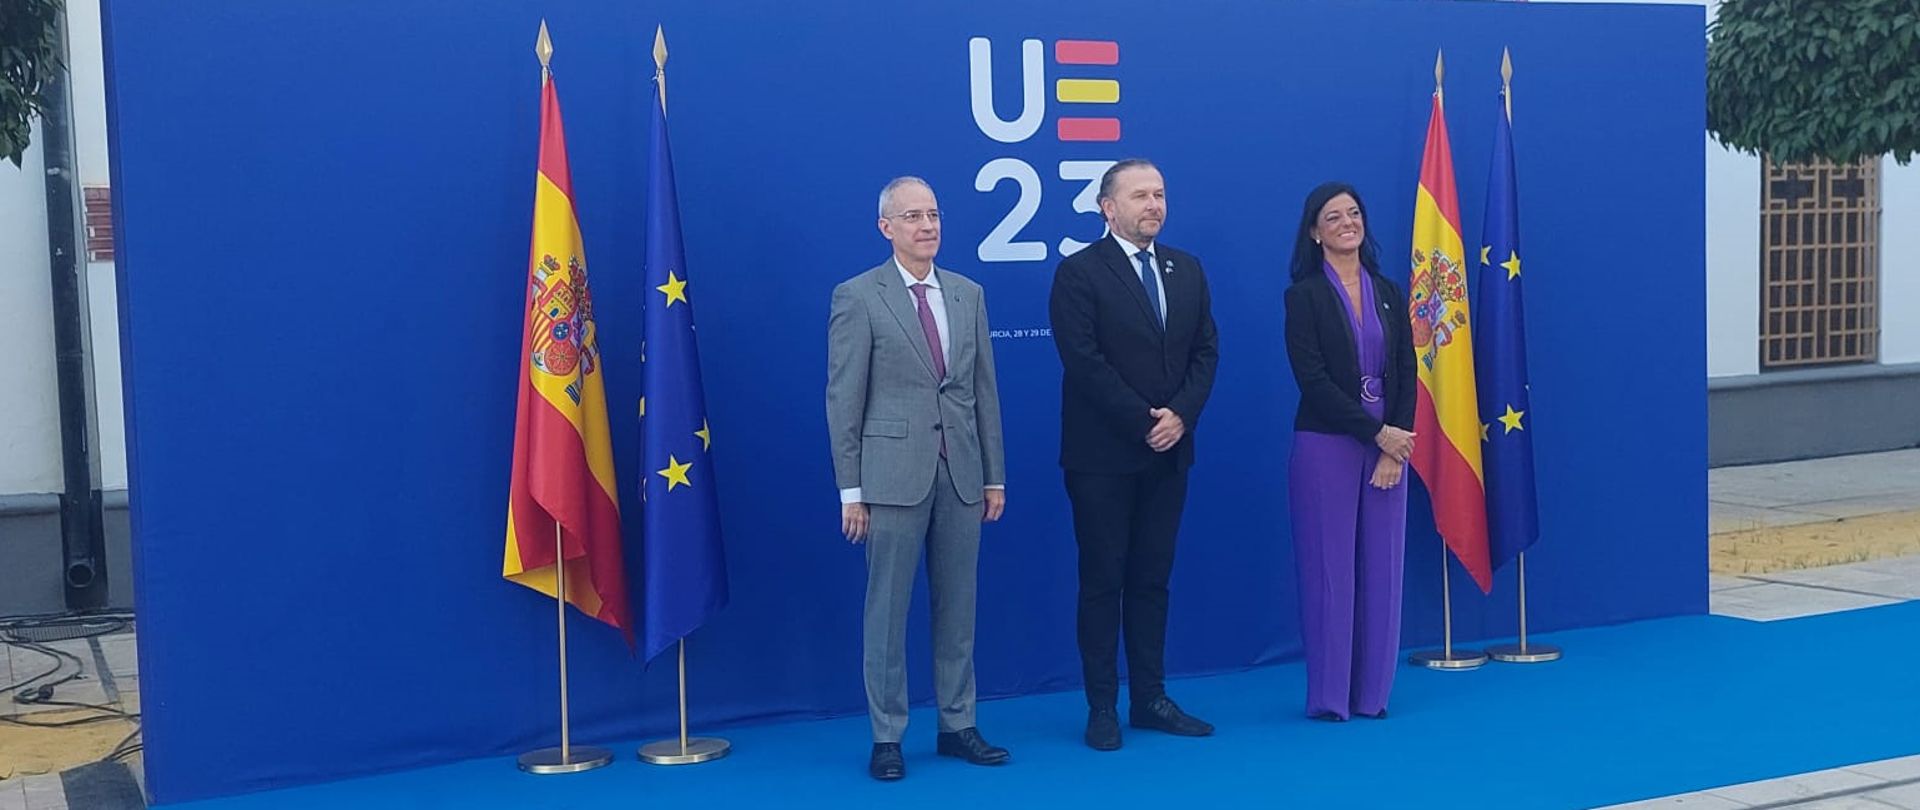 Dyrektor Generalny MFiPR Robert Bartold na nieformalnym spotkaniu przedstawicieli państw UE w Murcji, dyrektor Bartold pozuje do zdjęcia, po jego obu stronach stoją przedstawiciele rządu hiszpańskiego oraz flagi Hiszpanii i UE